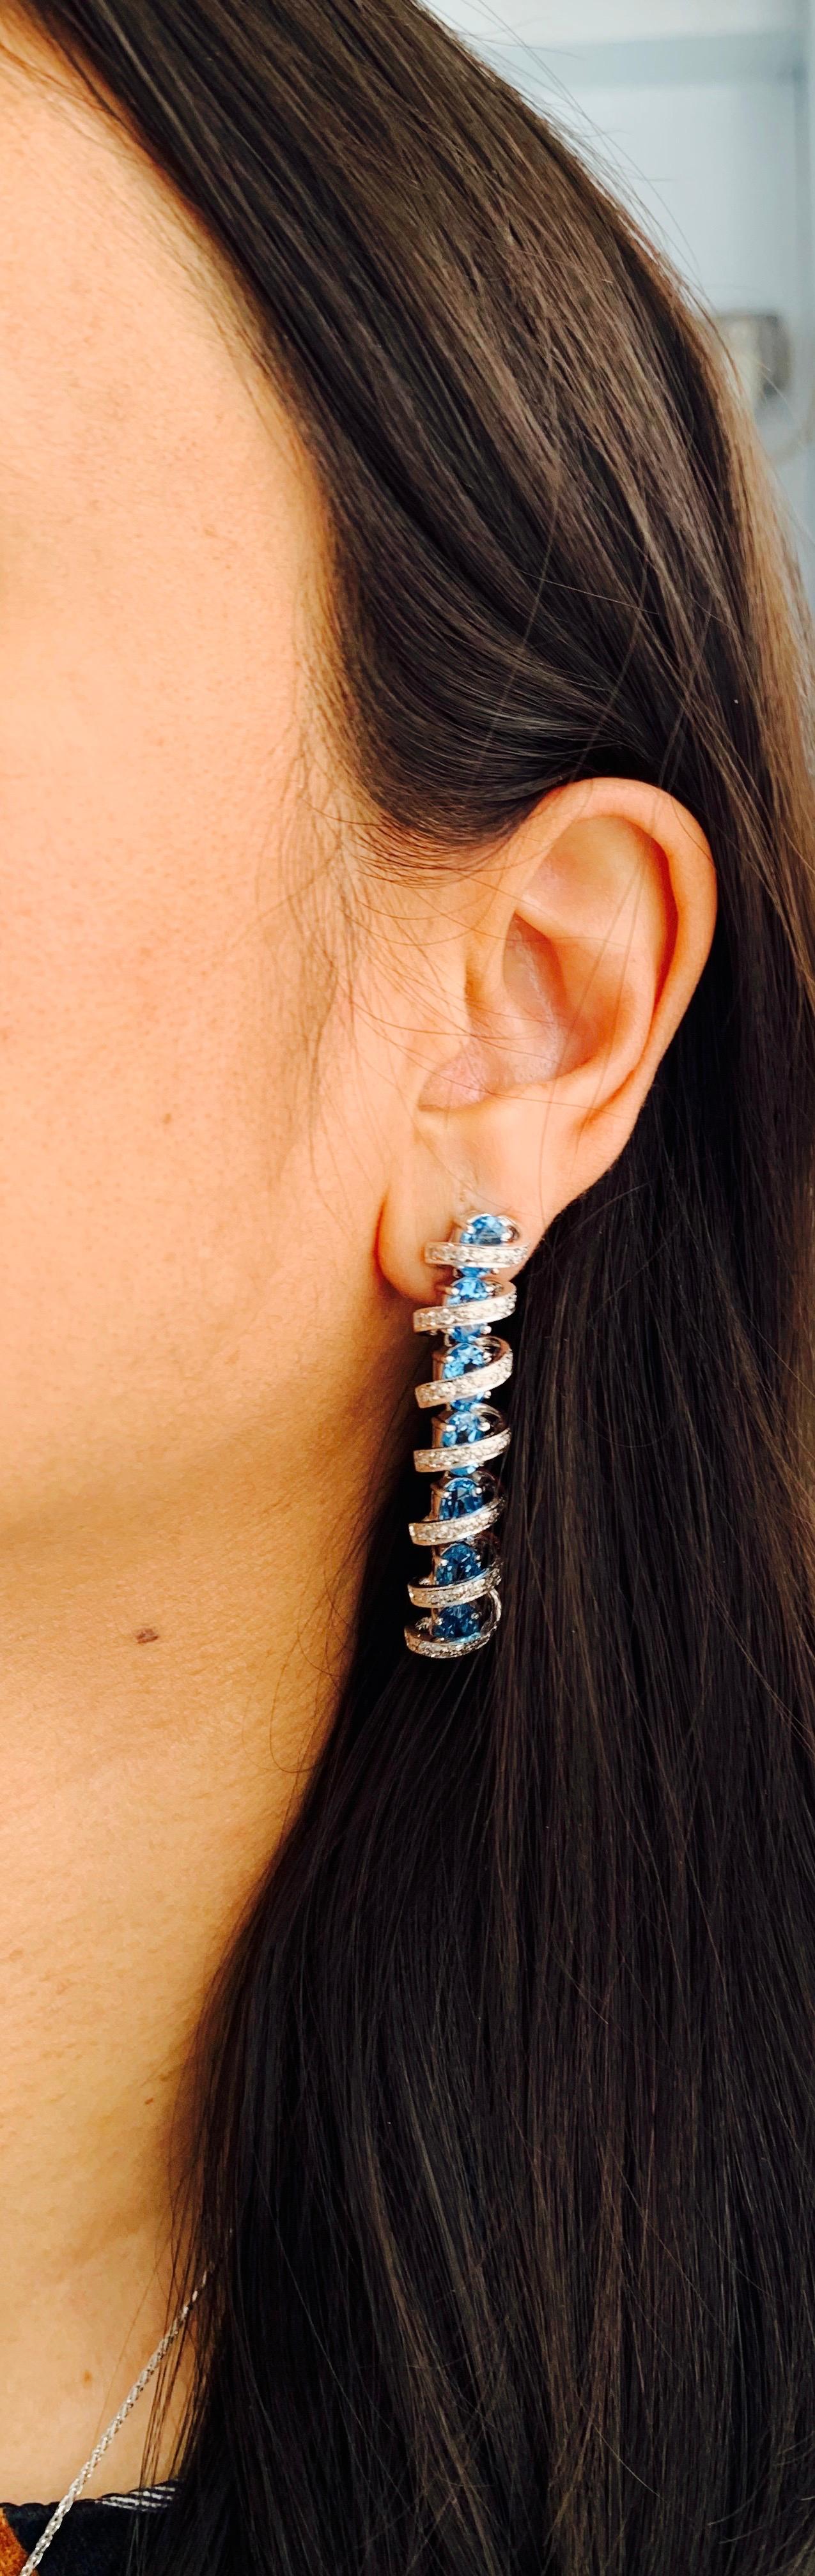 Diamond and Blue Topaz Earrings in 18 Karat White Gold For Sale 4